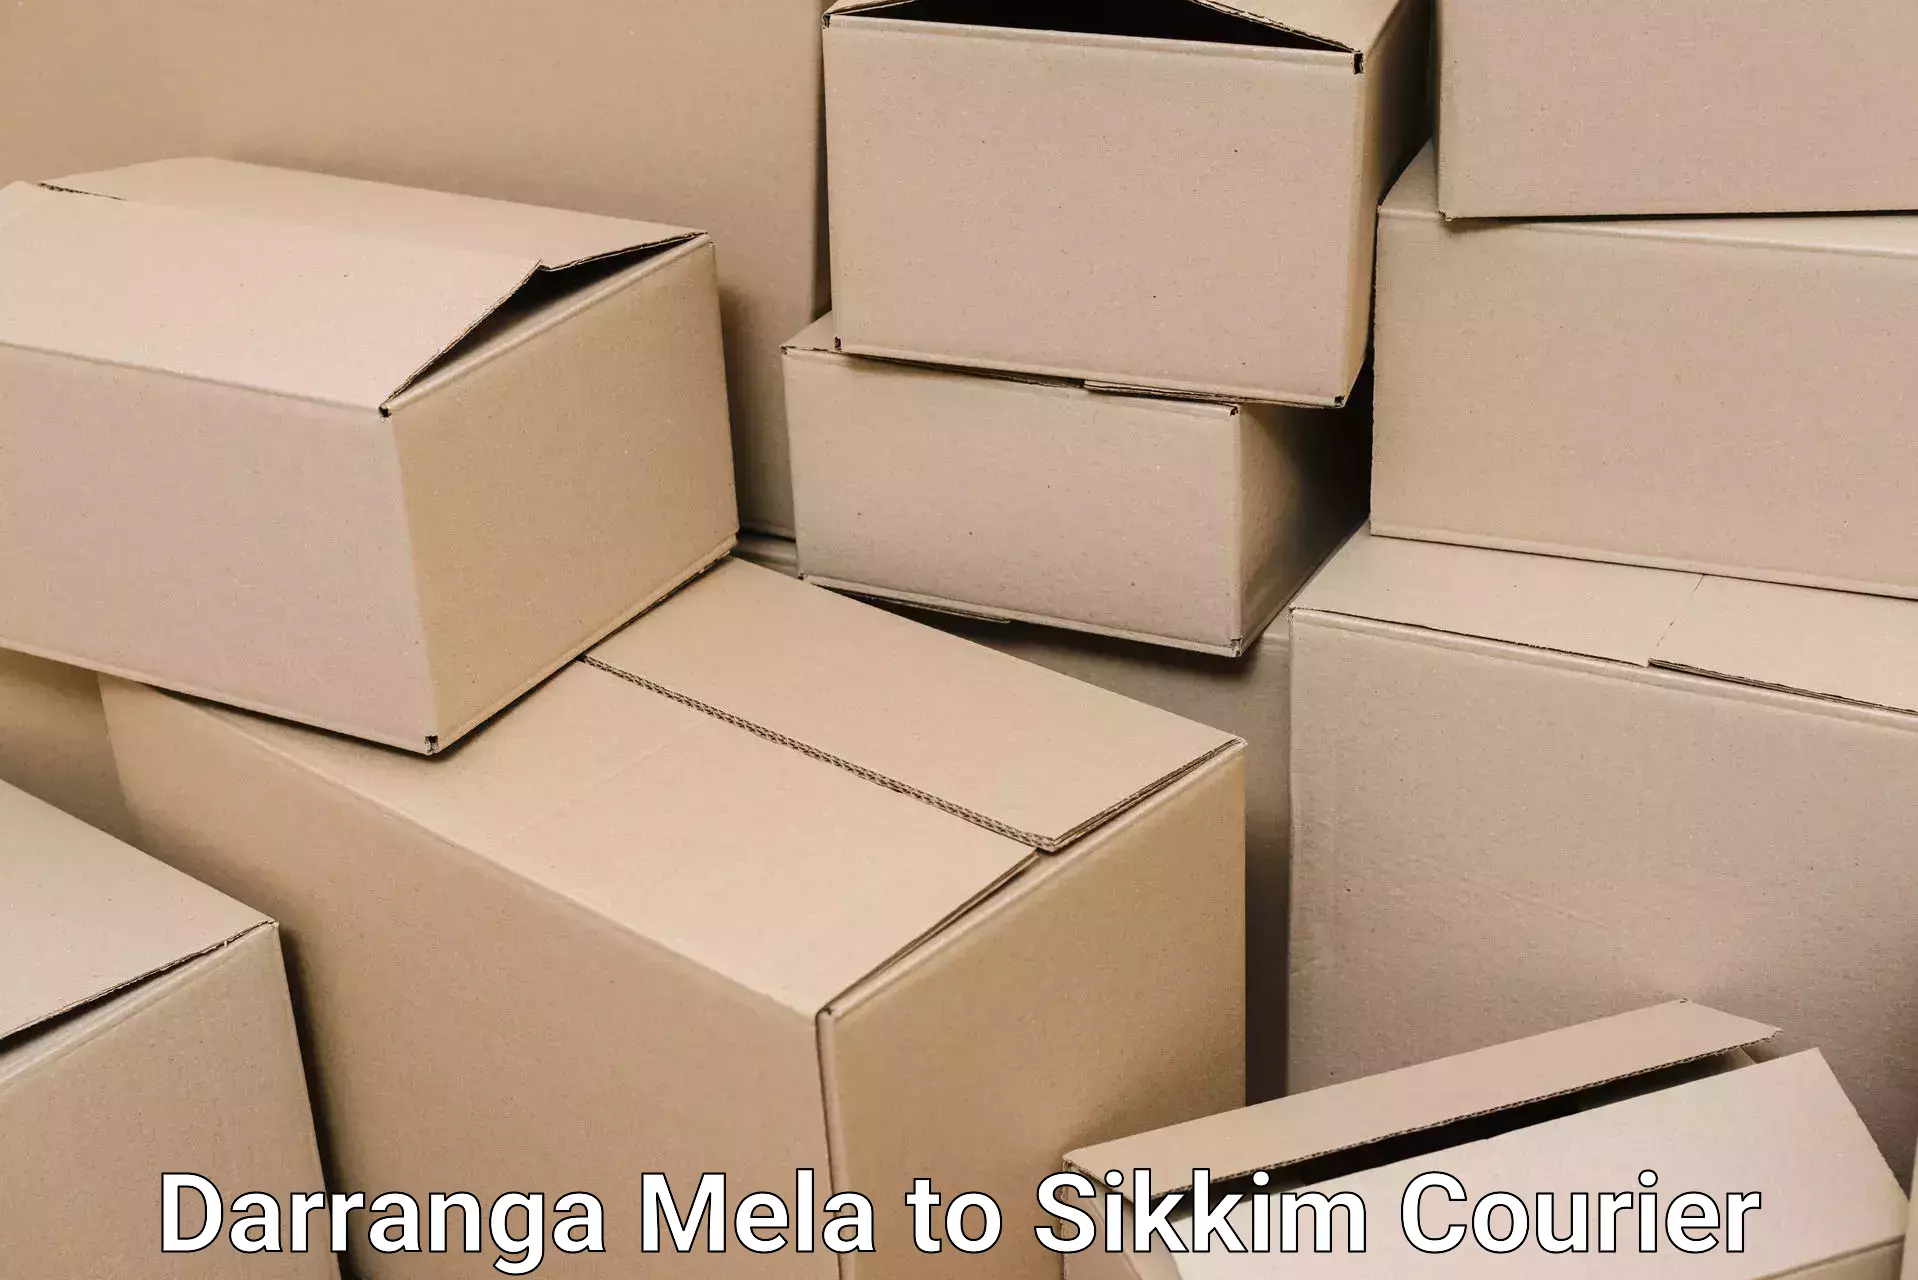 Home shifting services Darranga Mela to Pelling